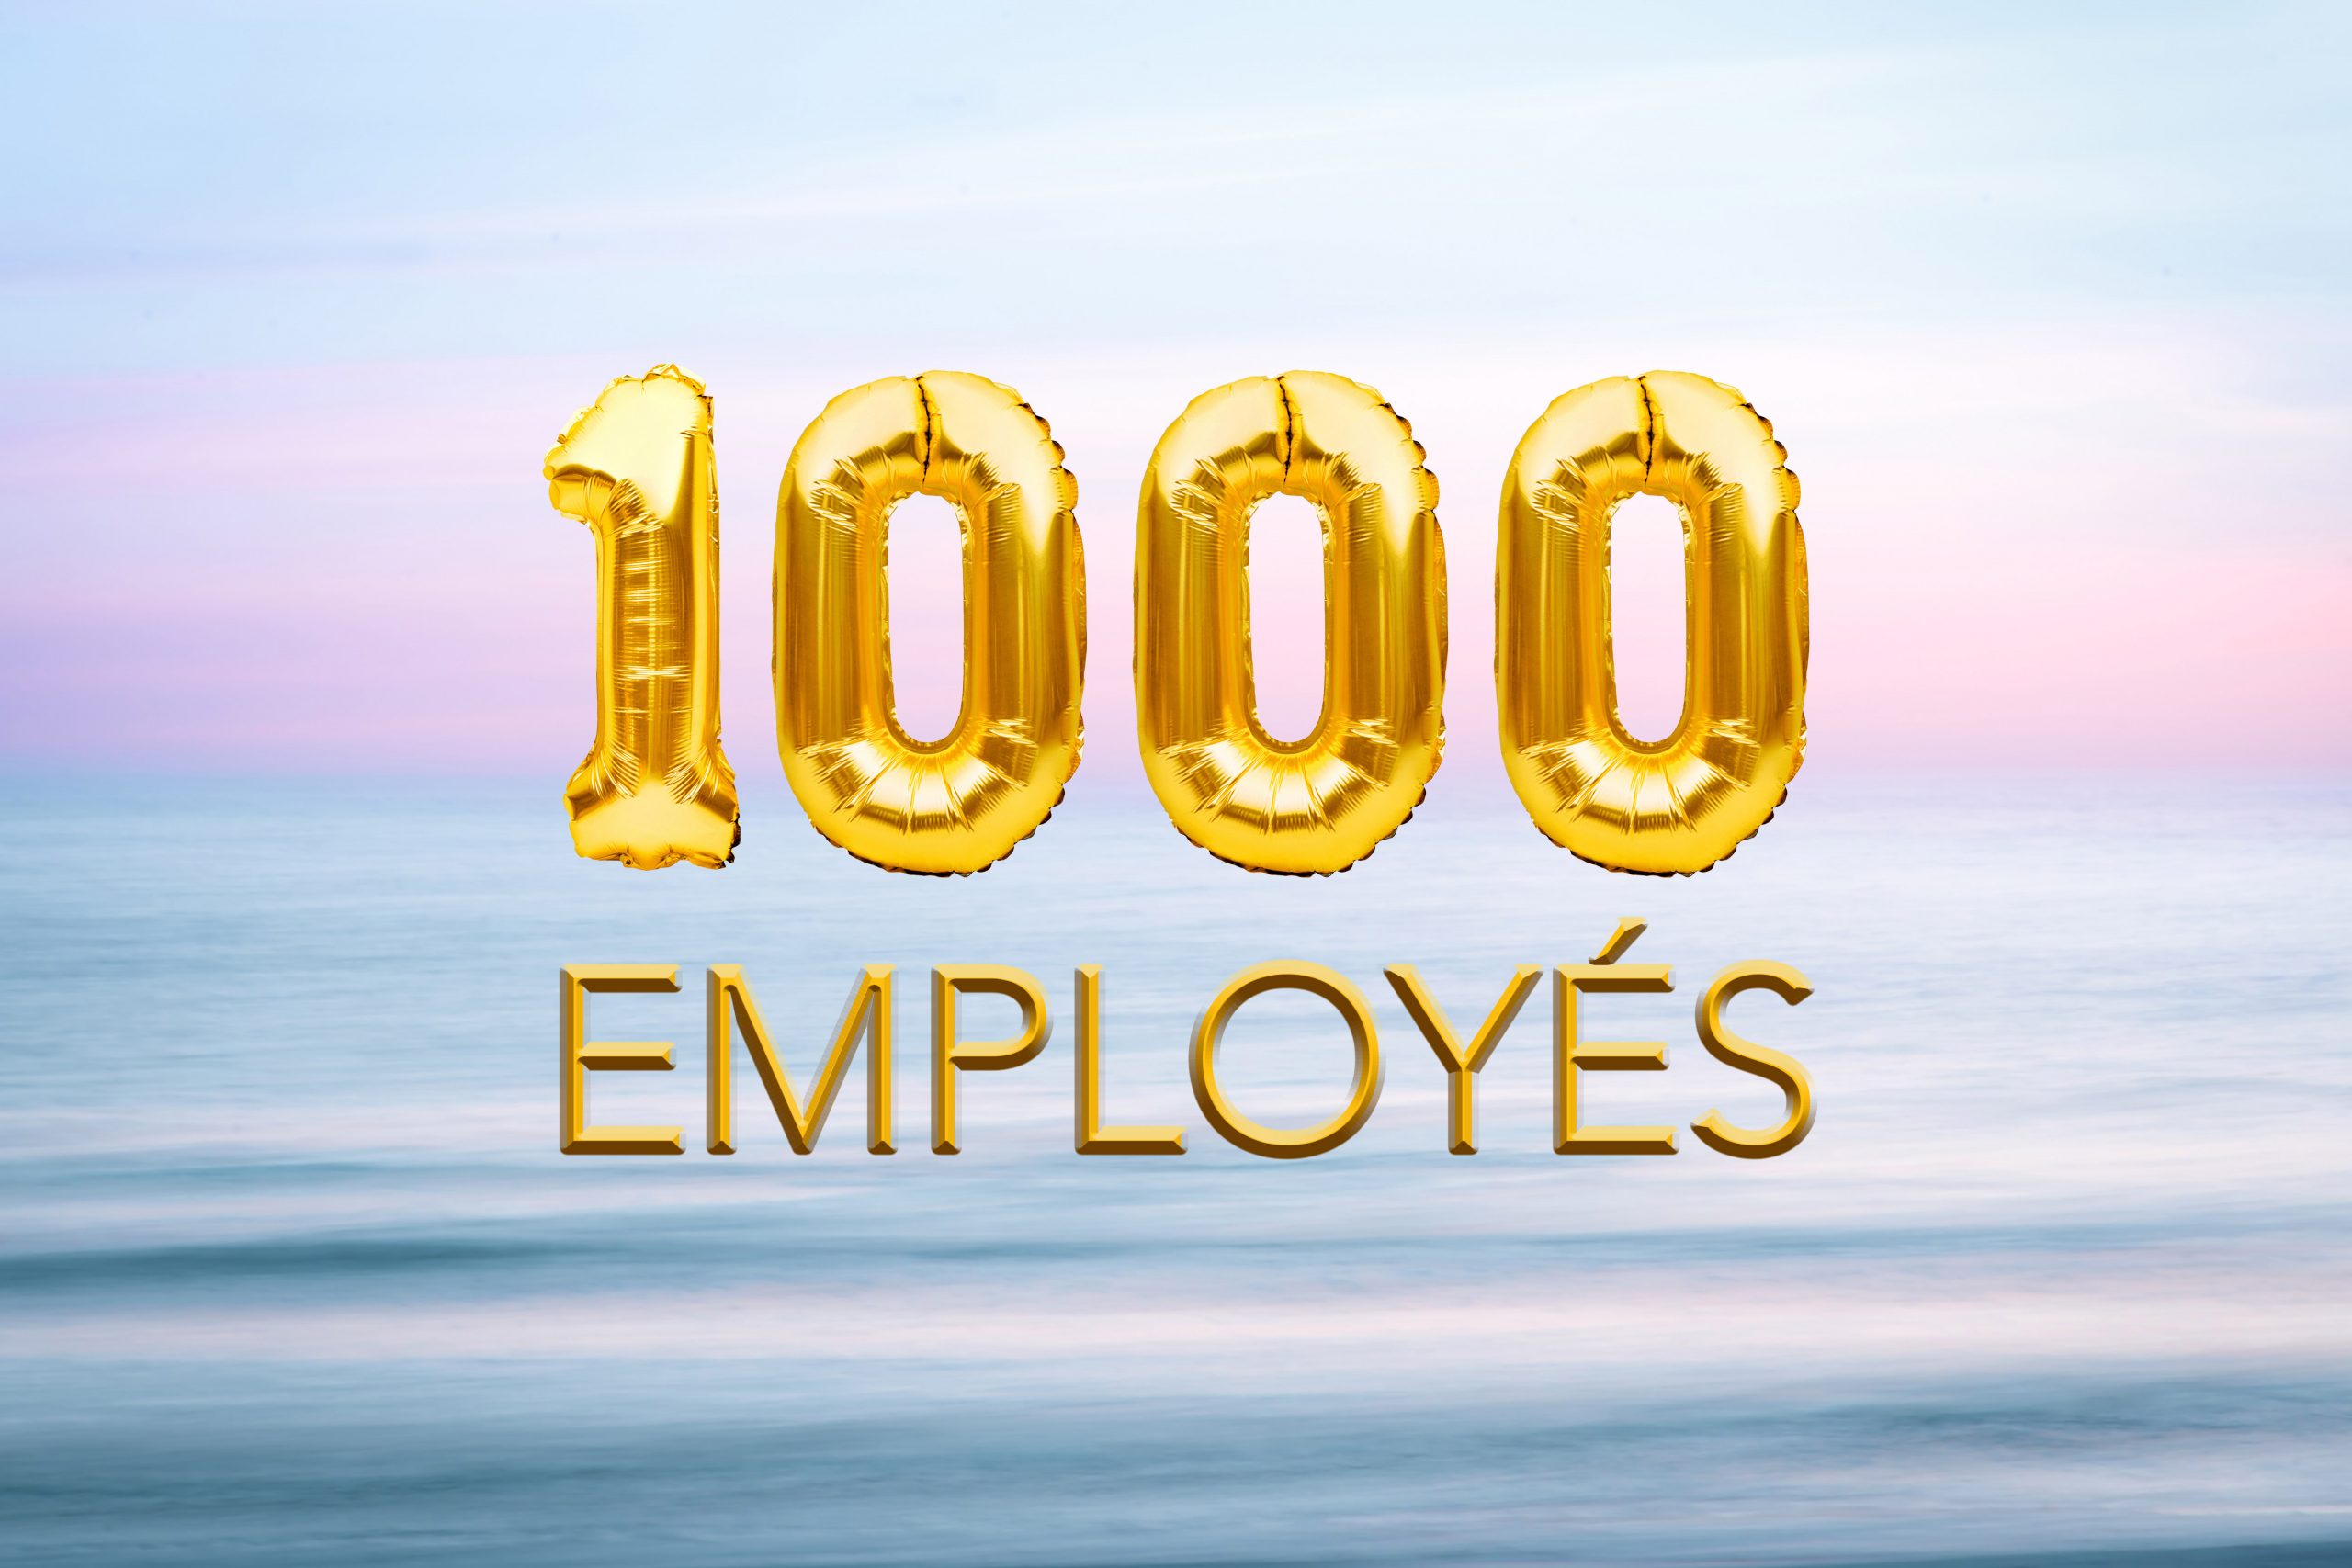 Le cap du 1,000ème Employé - 1,000th Employee Milestone